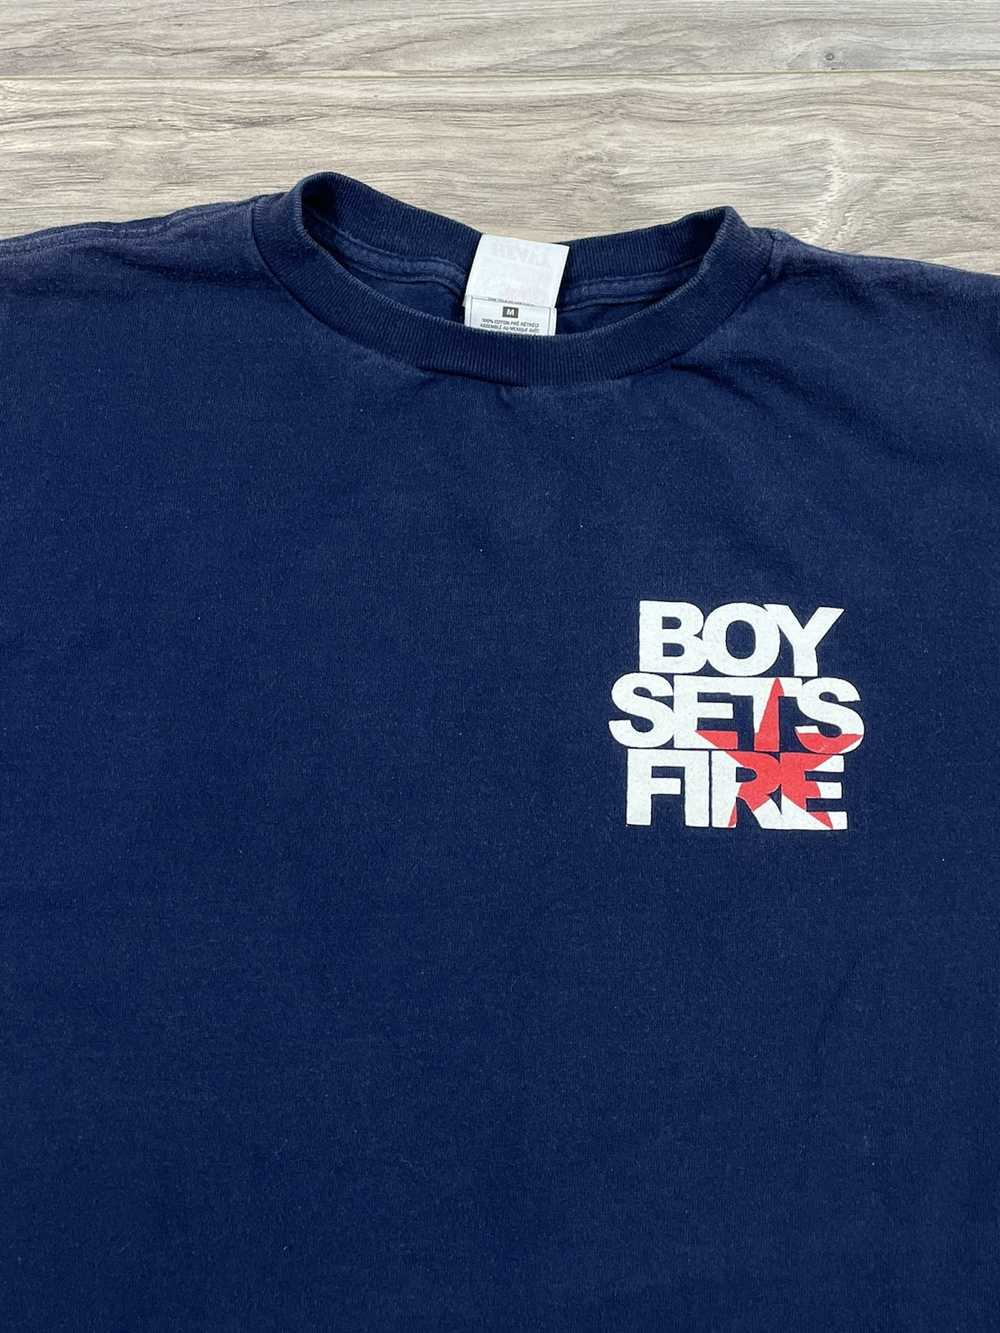 Vintage Boy sets fire vintage emo band shirt - image 3